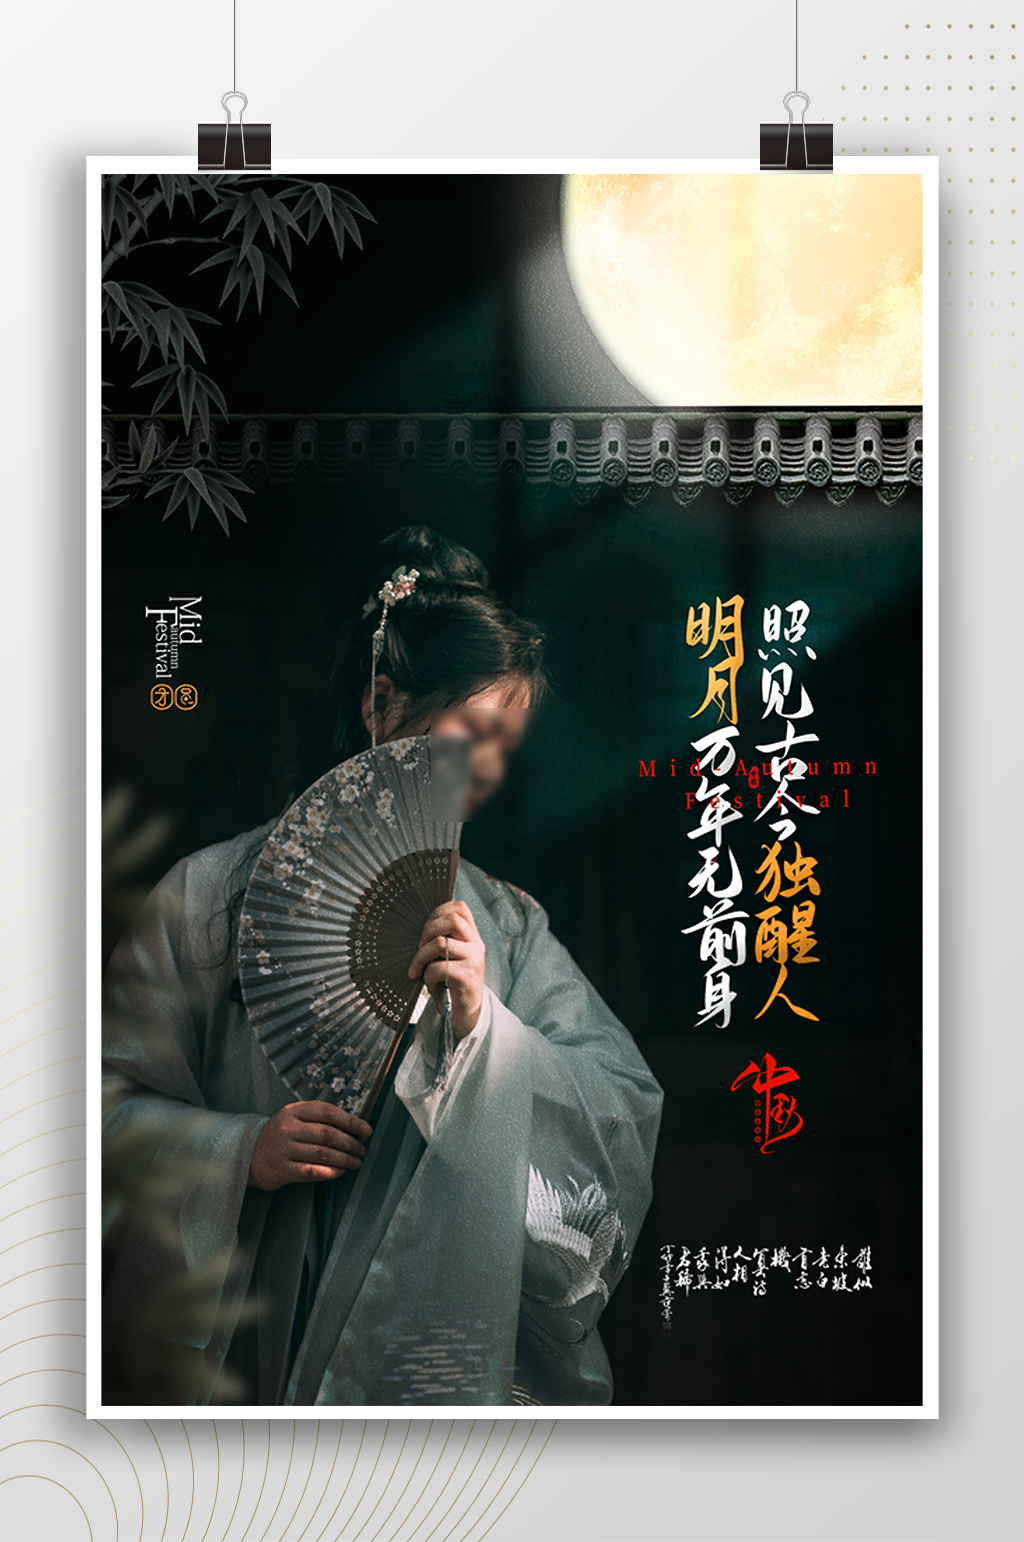 众图网独家提供中秋节古风美女节日海报素材免费下载,本作品是由冬